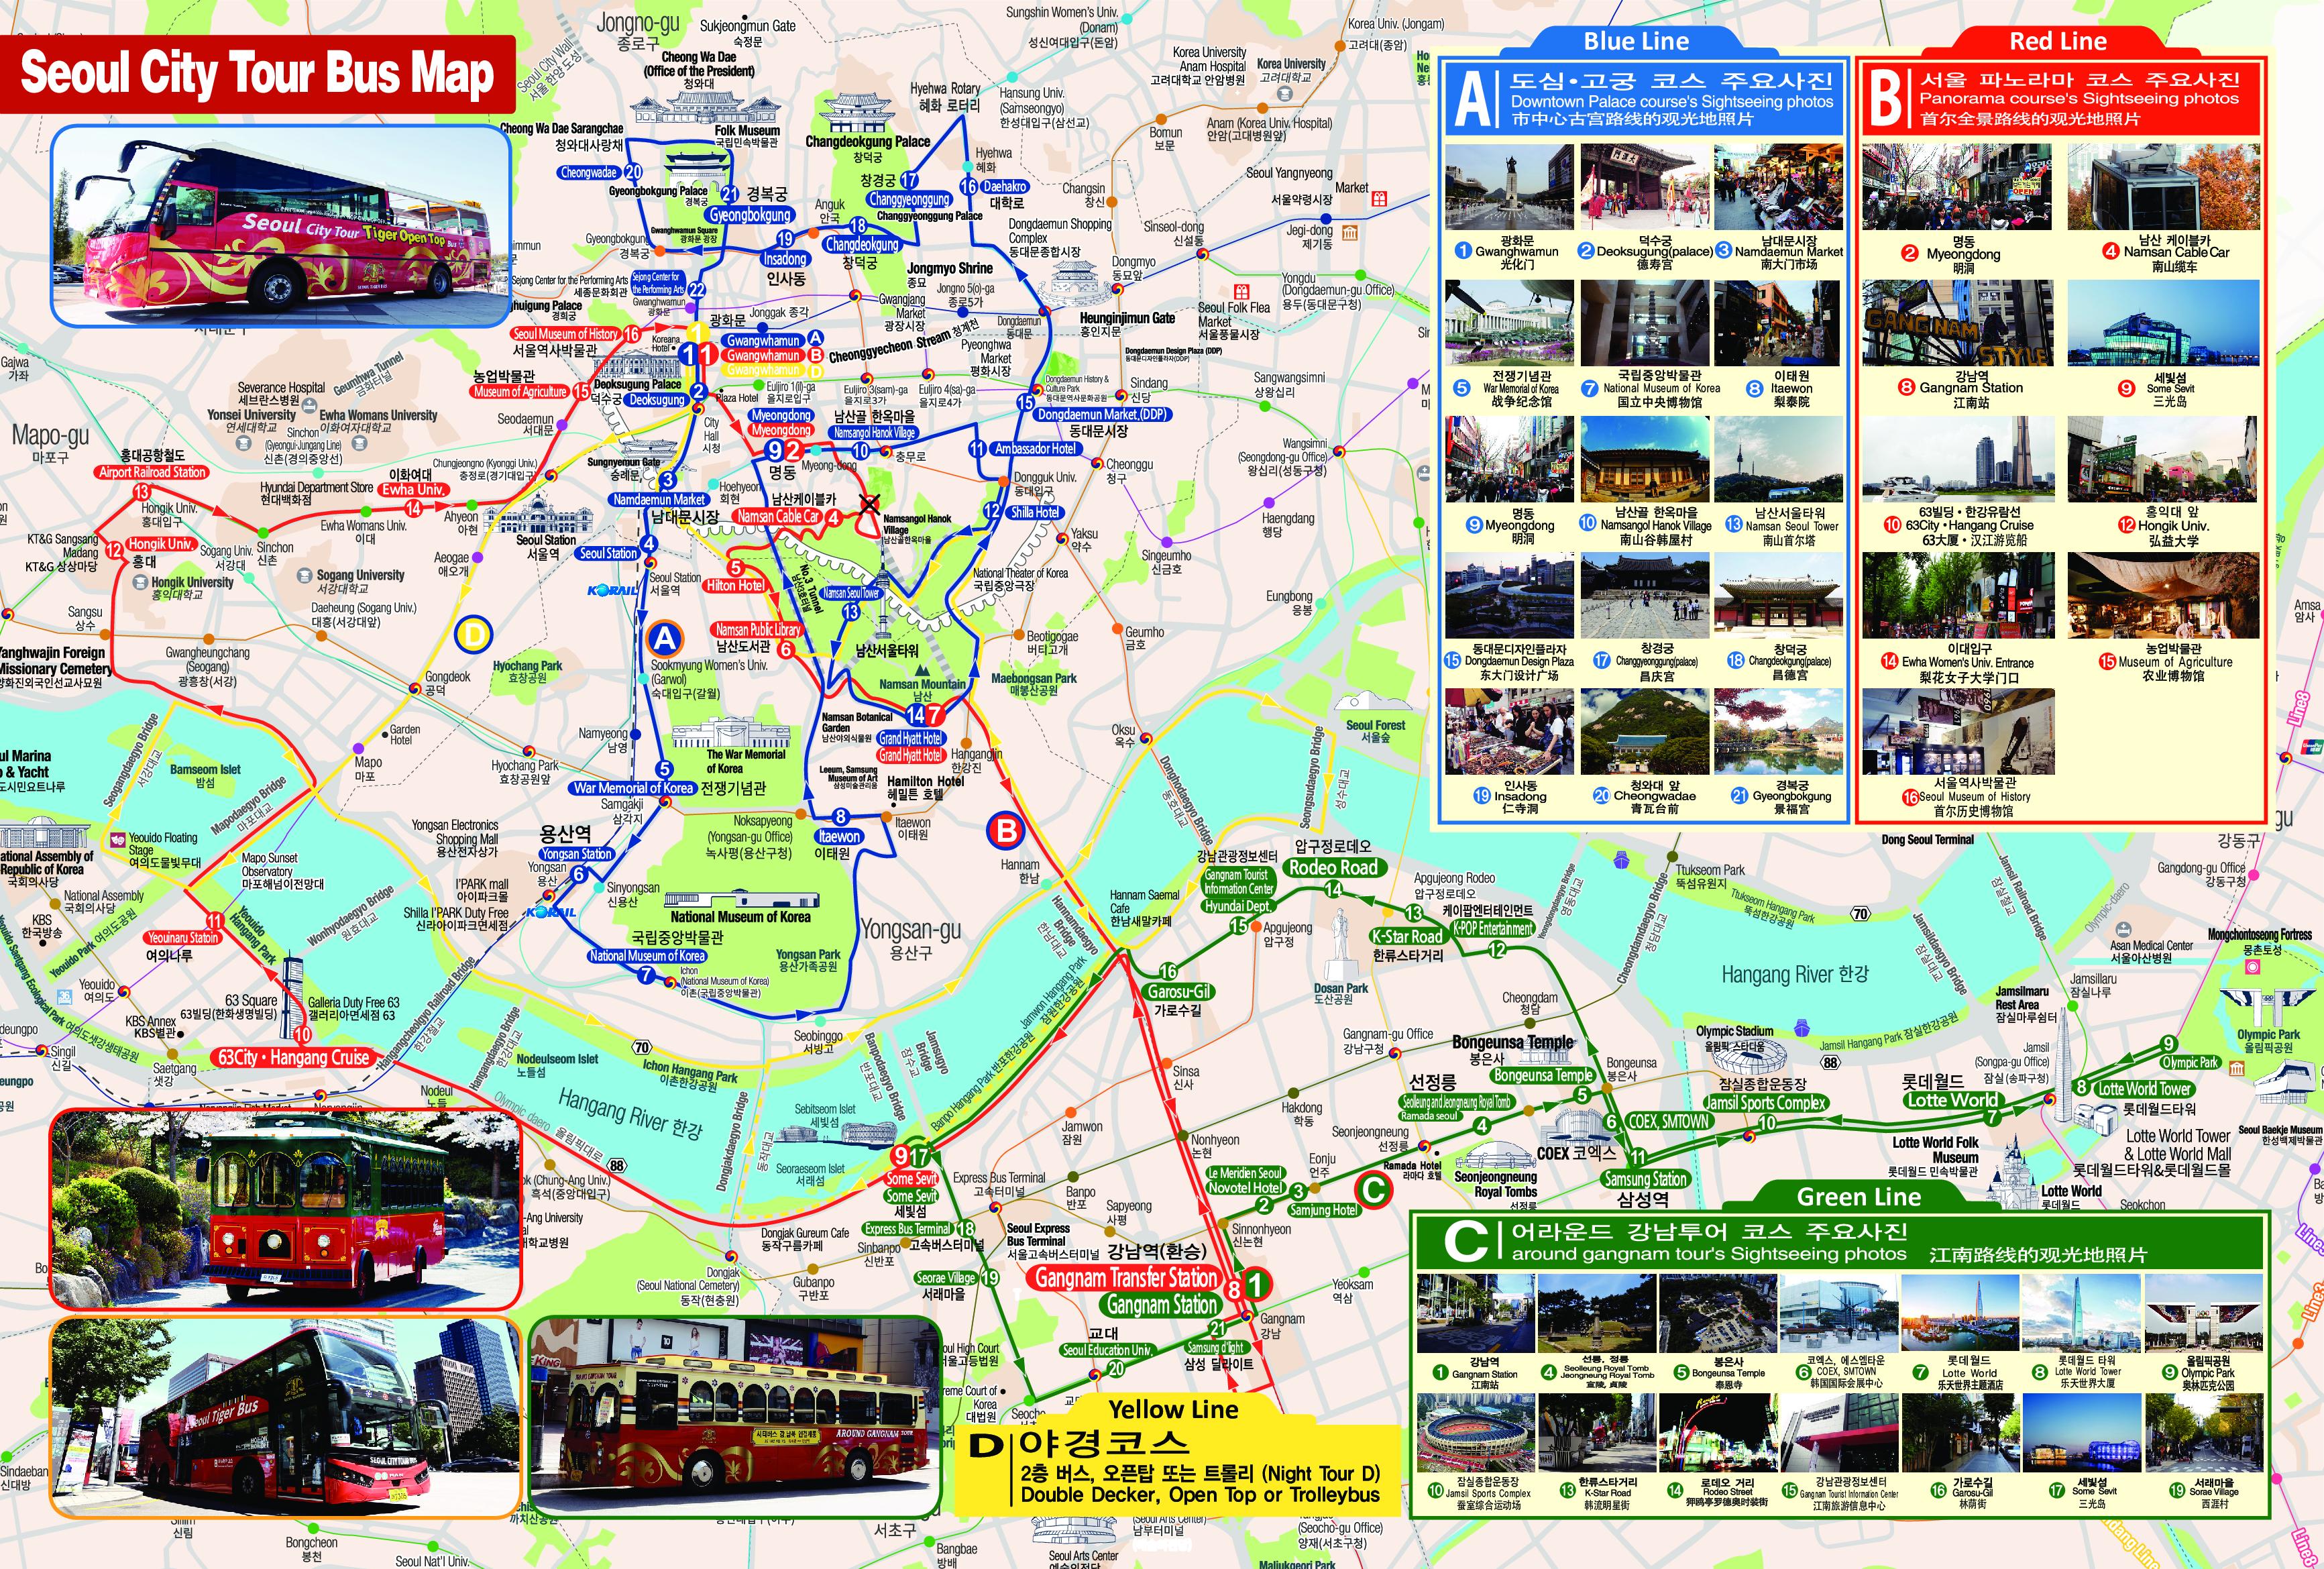 seoul city tour bus stops